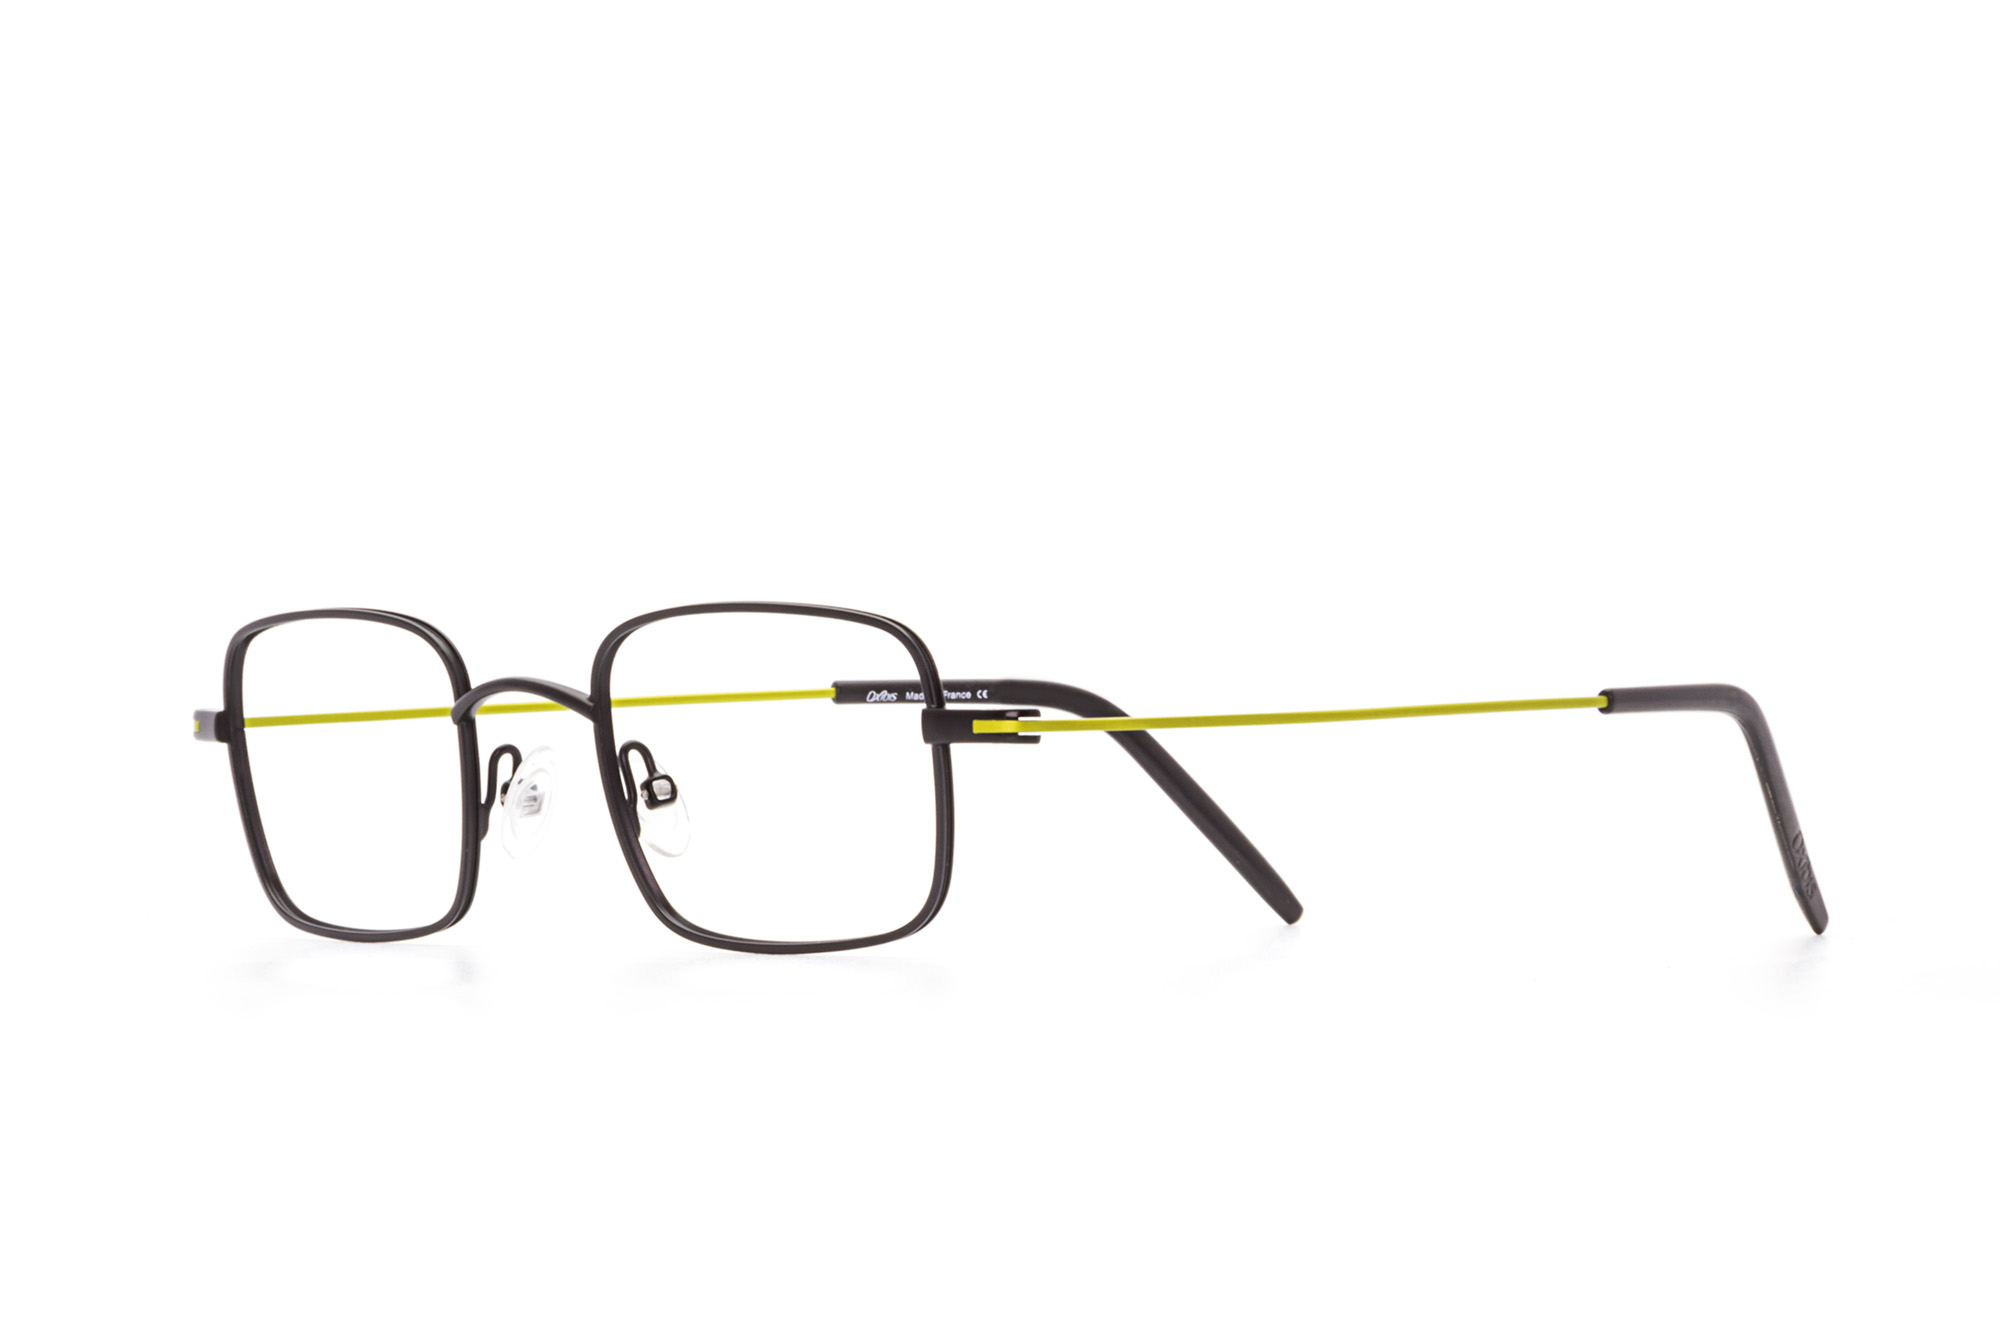 Kullanıma hazır optik tarzda işlenmiş camları ve optik uyumlu çerçevesiyle Oxibis Ippy IP5C1 45 küçük ekartman siyah ve yeşil renkli dikdörtgen model unisex gözlüğü optisyen veya gözlükçülerin sunacağı numarasız veya numaralı cam özelleştirmeleriyle size en yakın gözlükçüden satın alabilirsiniz.